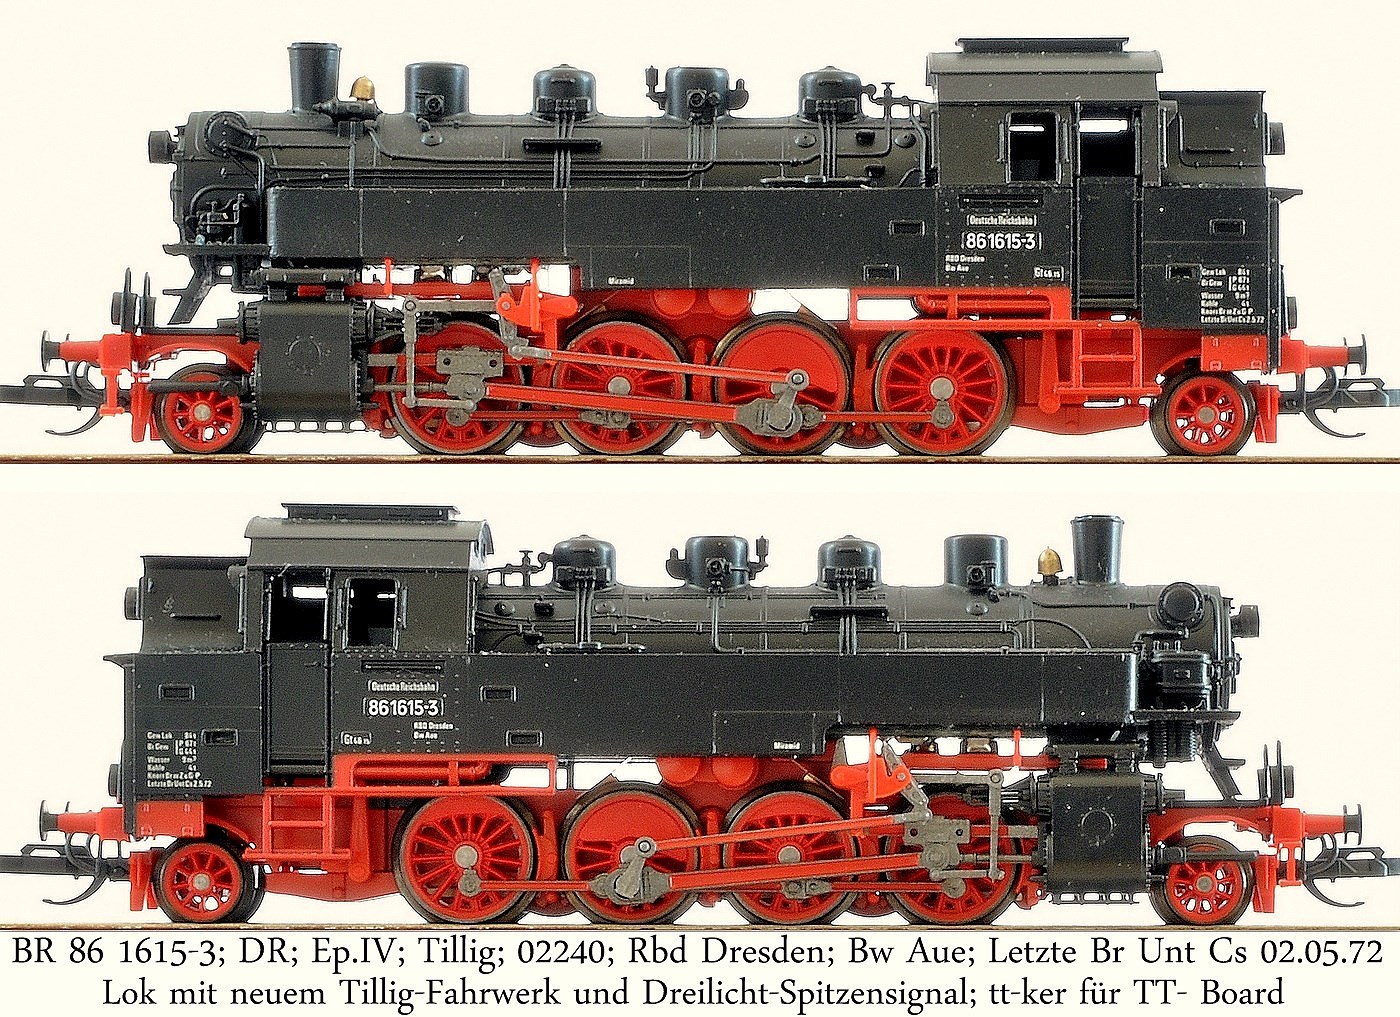 BR 86 1615-3; DR; Ep.IV; Tillig; 02240; Rbd Dresden; Bw Aue; Letzte Br Unt Cs 02.05.72; Lok mit neuem Tillig-Fahrwerk und Dreilicht-Spitzensignal